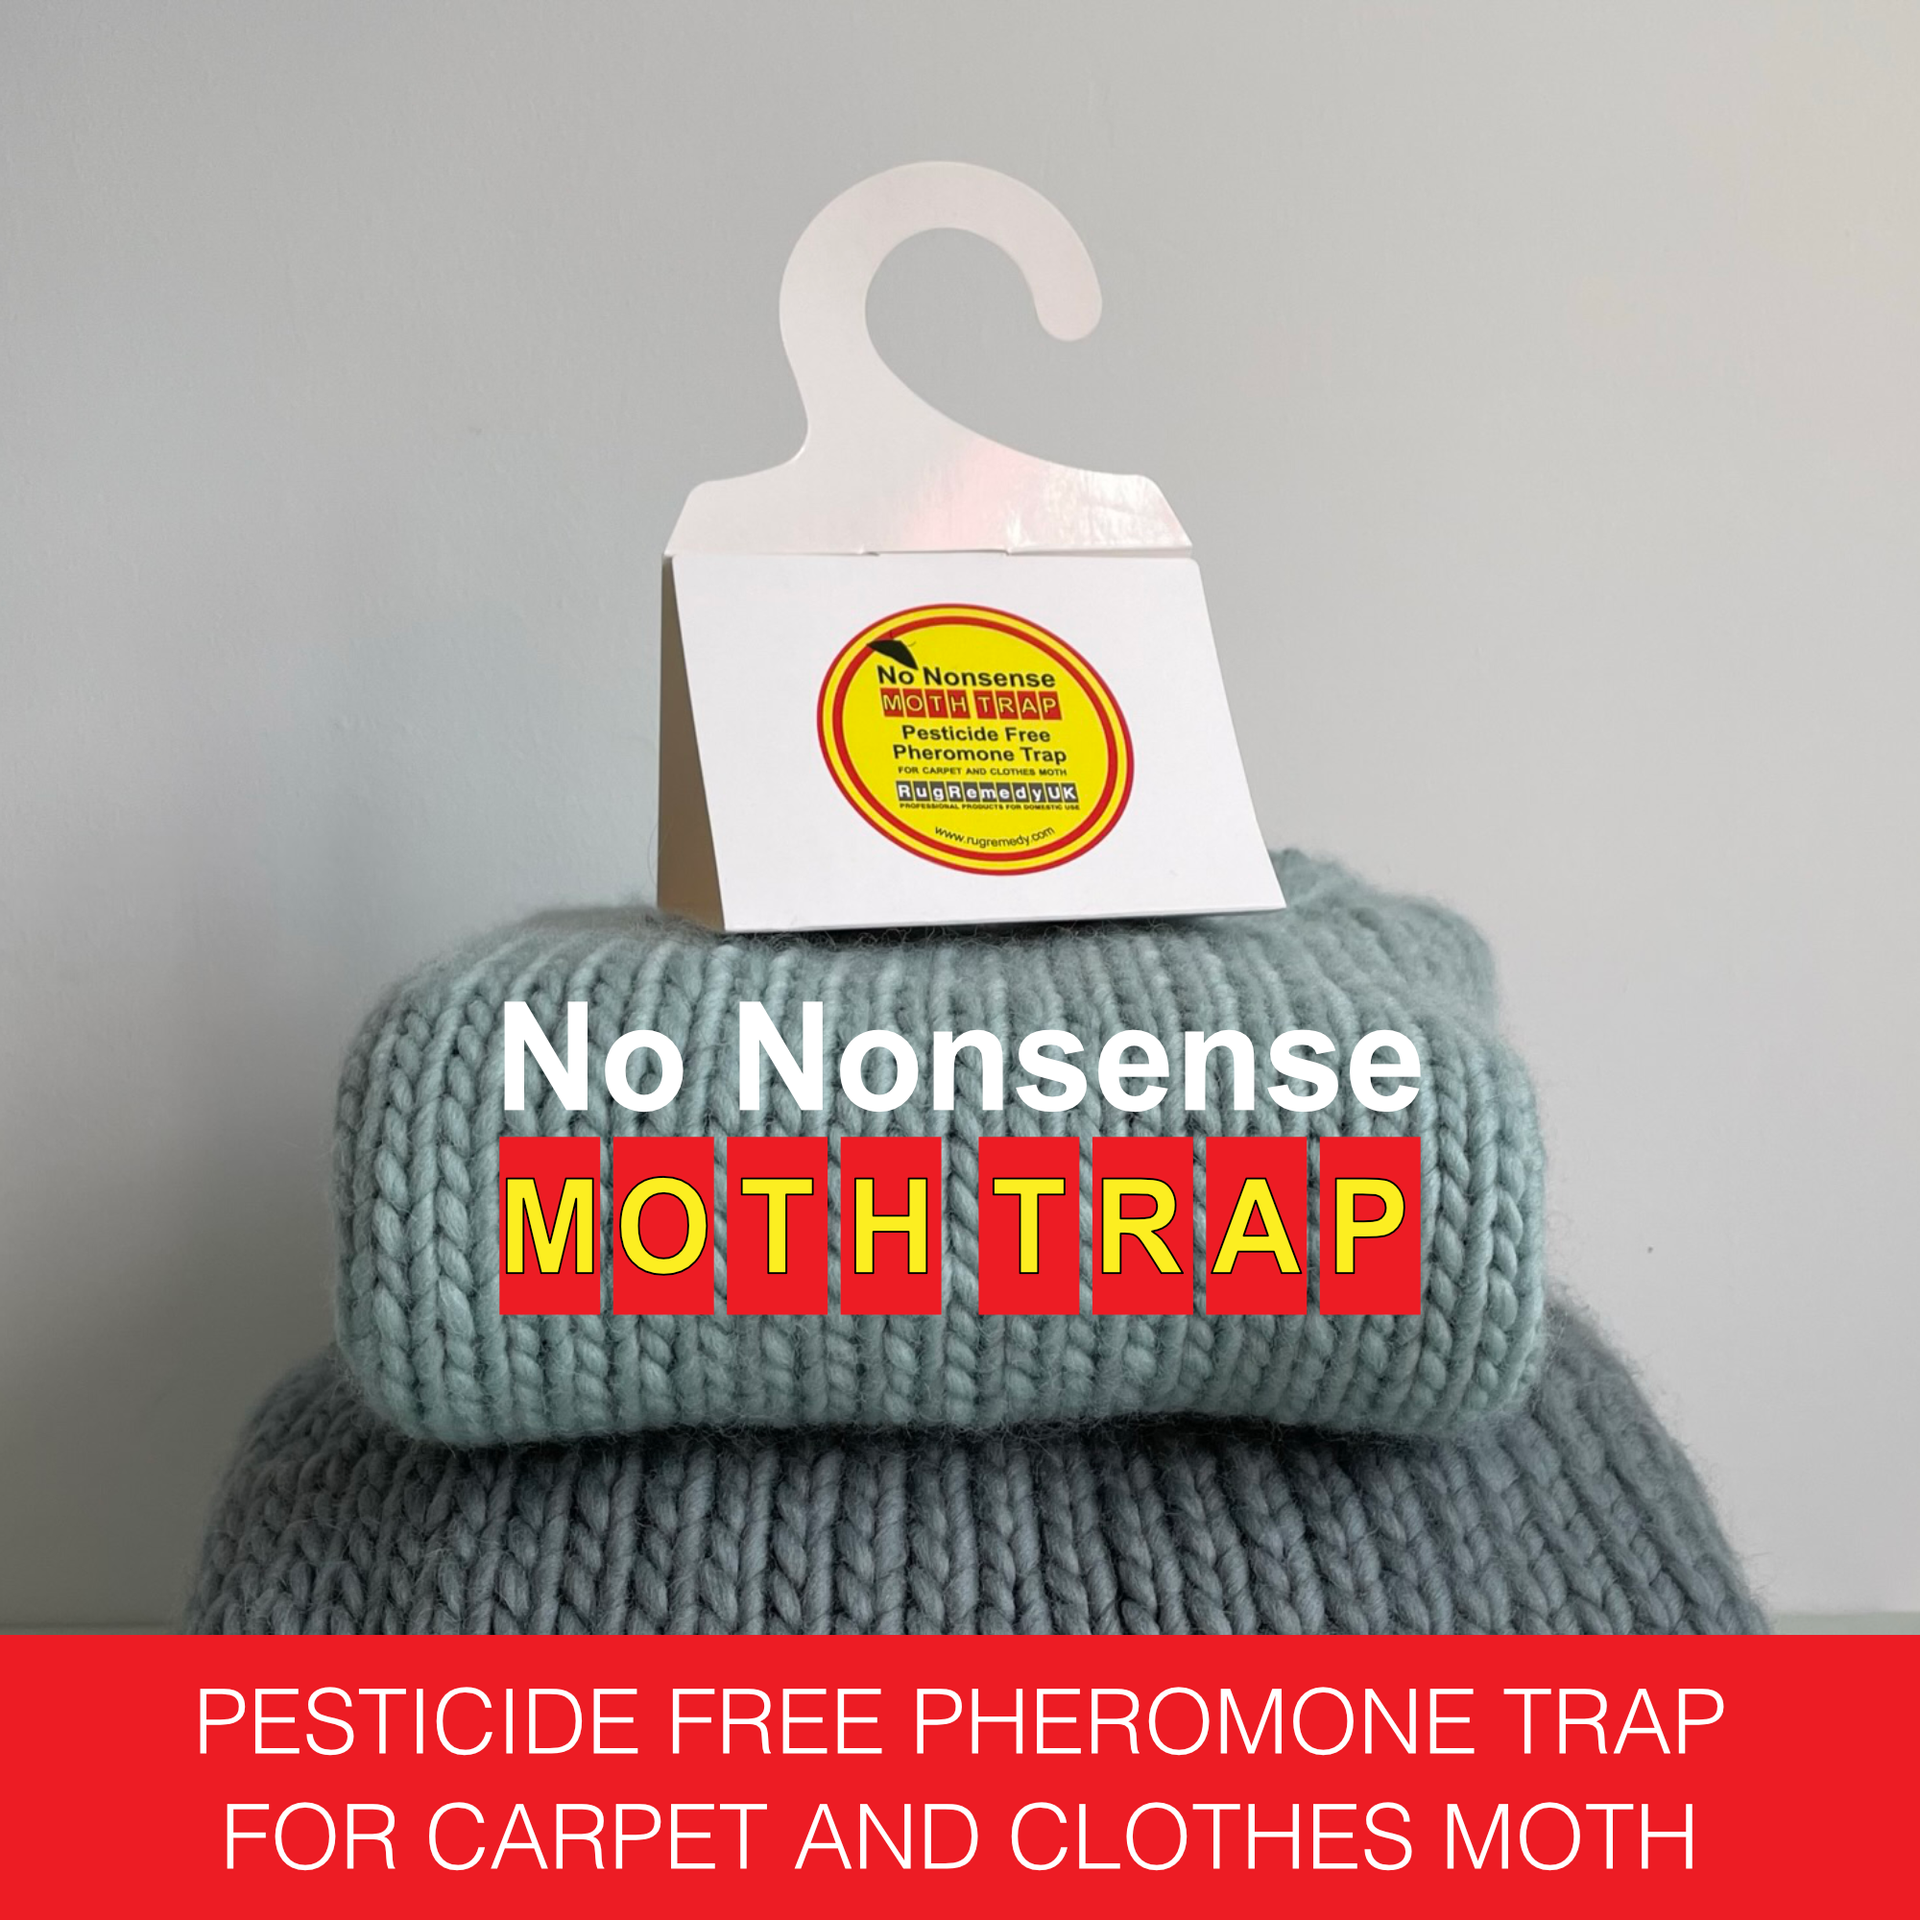 No Nonsense Moth Trap